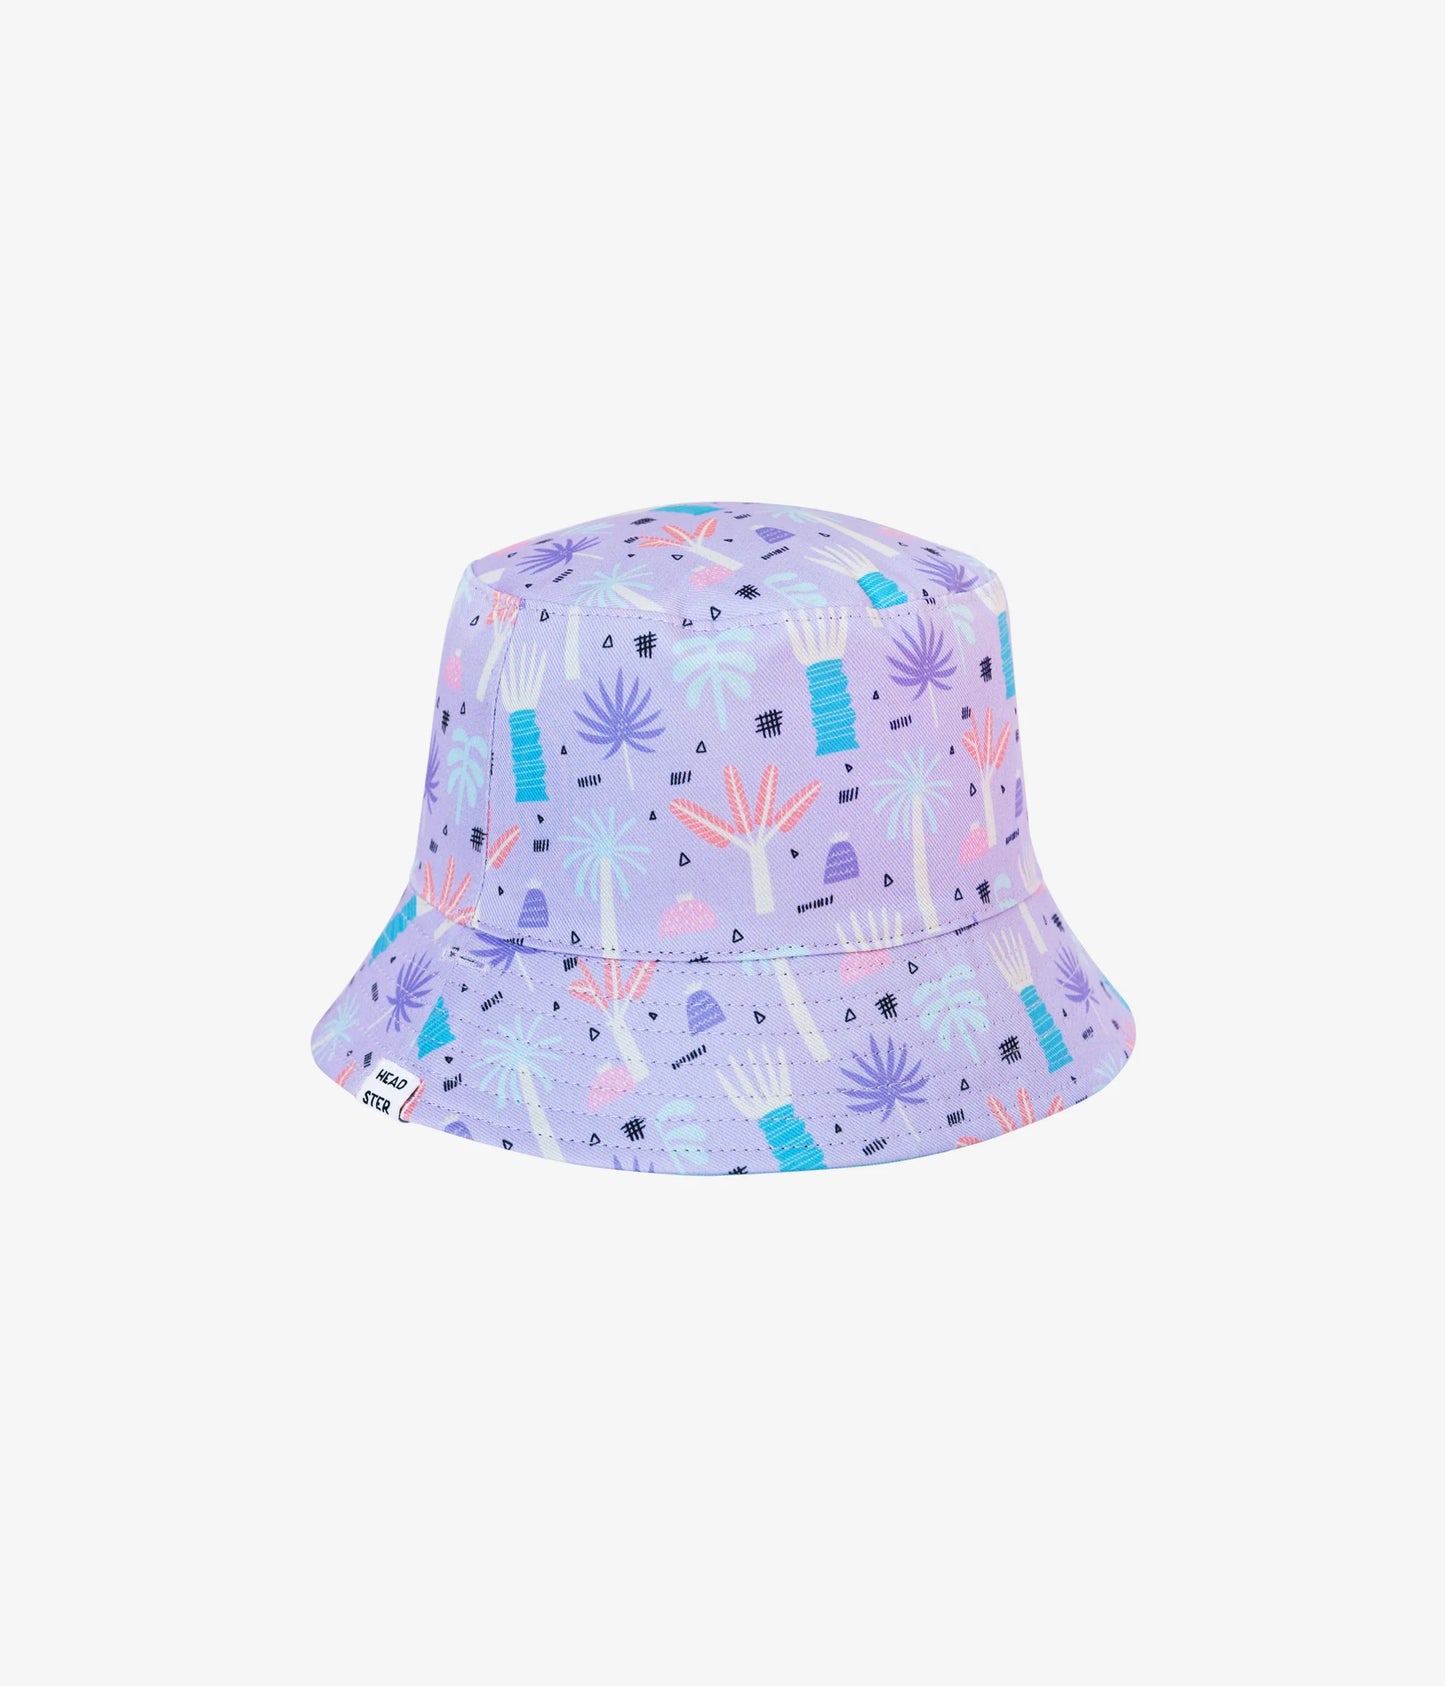 Jungle Fever Bucket Hat - Ultraviolet